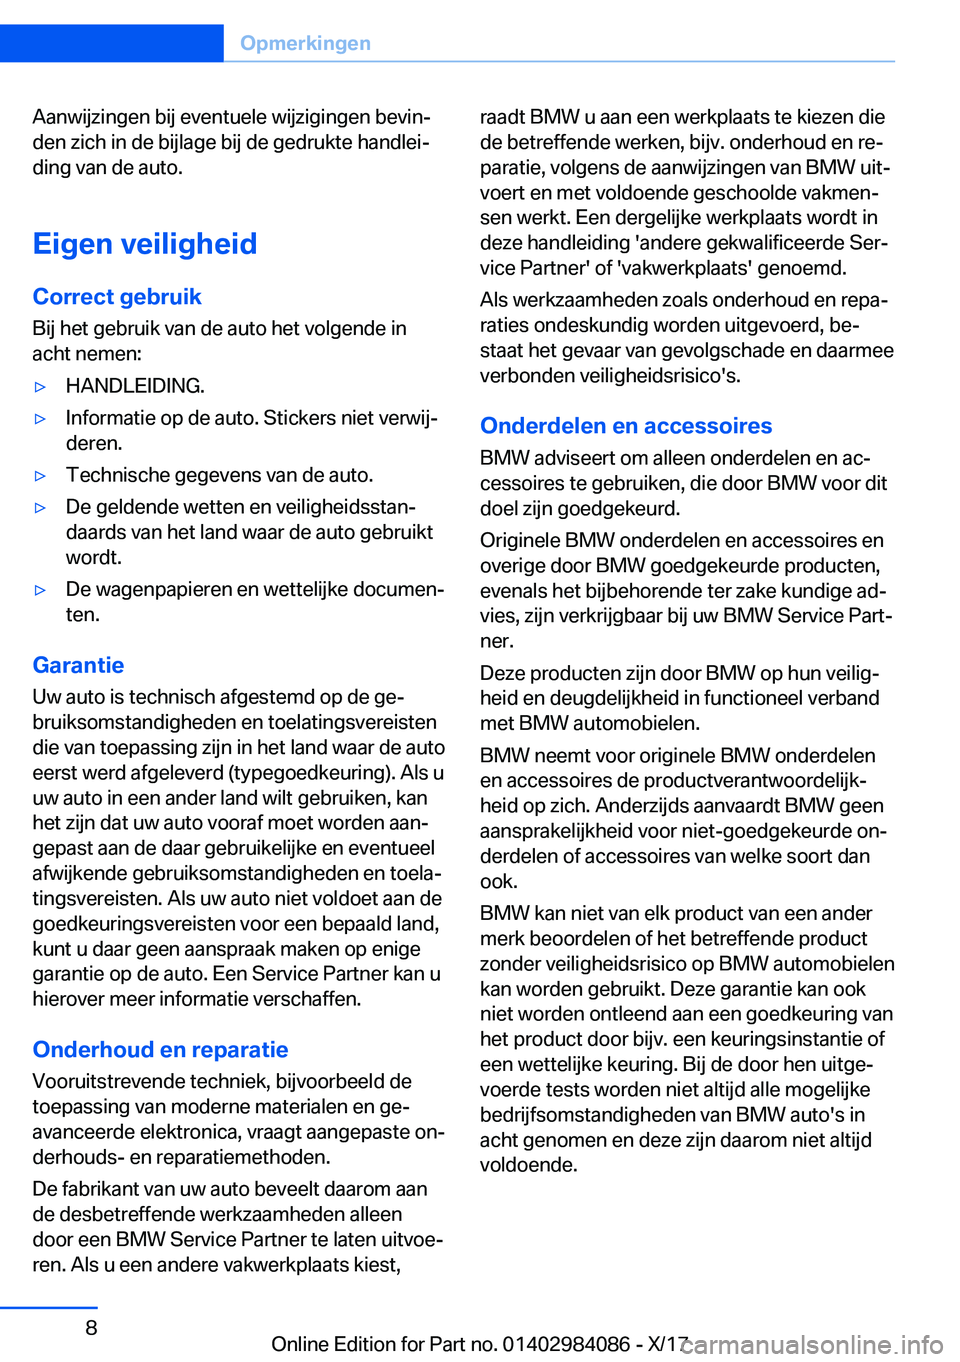 BMW 3 SERIES 2018  Instructieboekjes (in Dutch) �A�a�n�w�i�j�z�i�n�g�e�n� �b�i�j� �e�v�e�n�t�u�e�l�e� �w�i�j�z�i�g�i�n�g�e�n� �b�e�v�i�nj
�d�e�n� �z�i�c�h� �i�n� �d�e� �b�i�j�l�a�g�e� �b�i�j� �d�e� �g�e�d�r�u�k�t�e� �h�a�n�d�l�e�ij
�d�i�n�g� �v�a